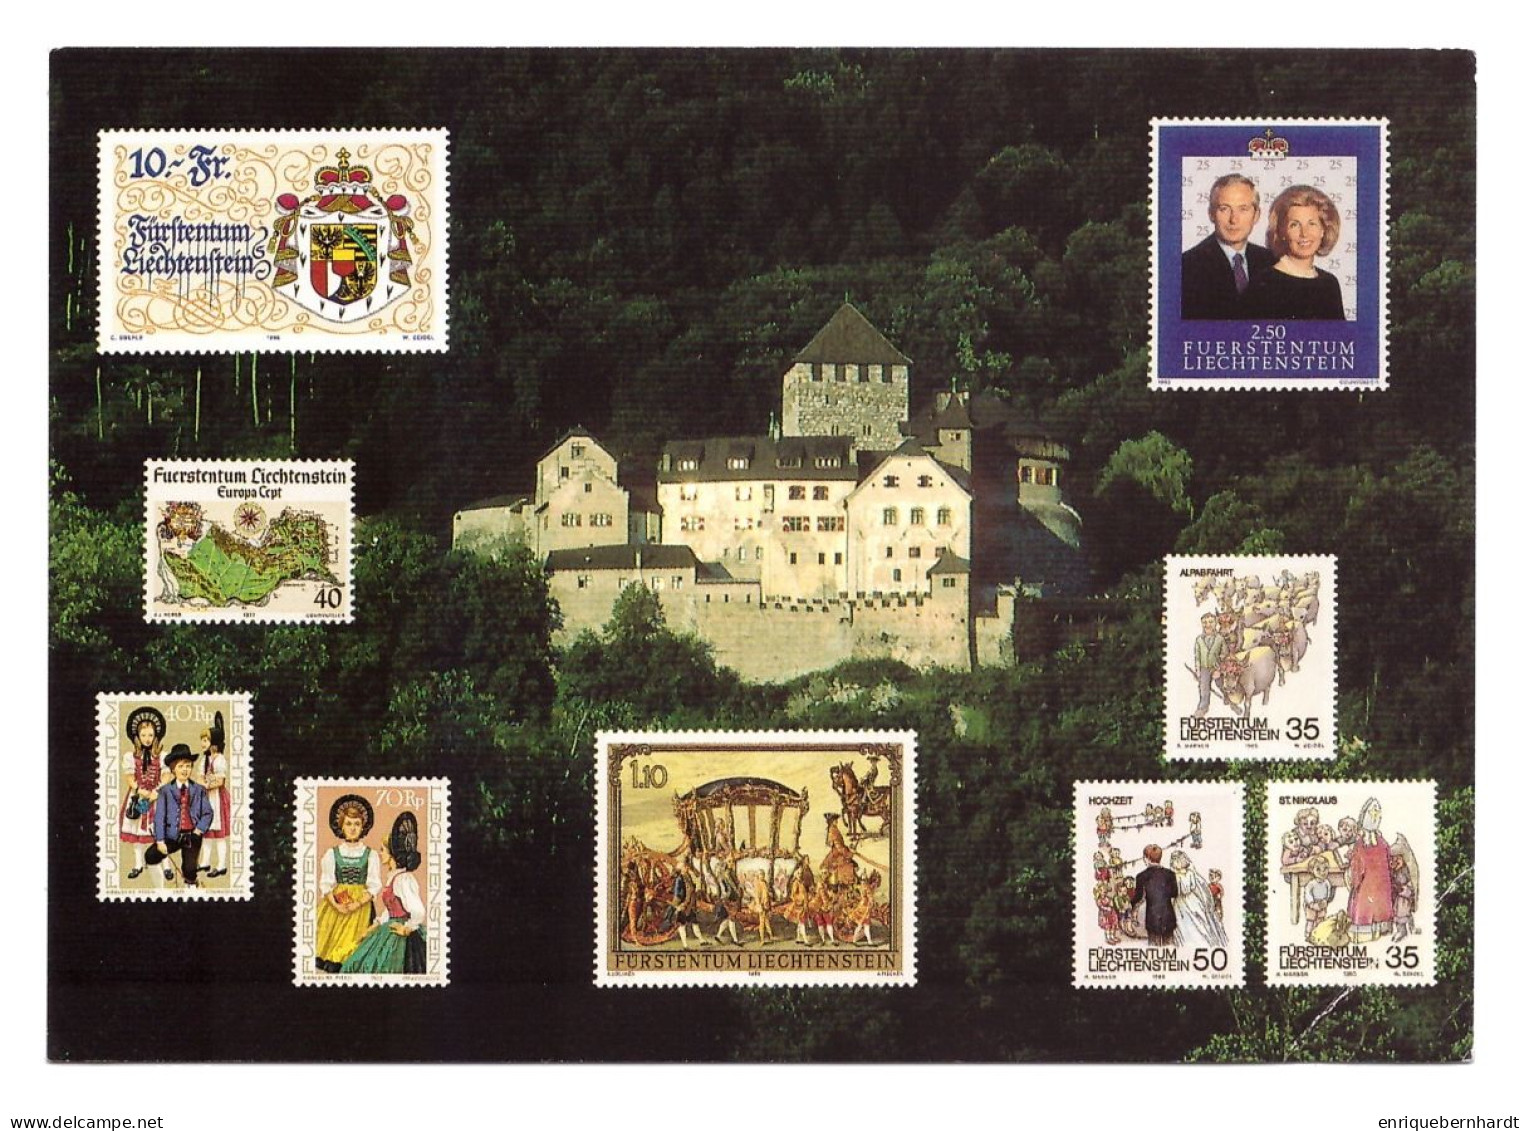 LIECHTENSTEINBRIEFMARKEN IM DAUERAUFTRAG - Briefmarken (Abbildungen)